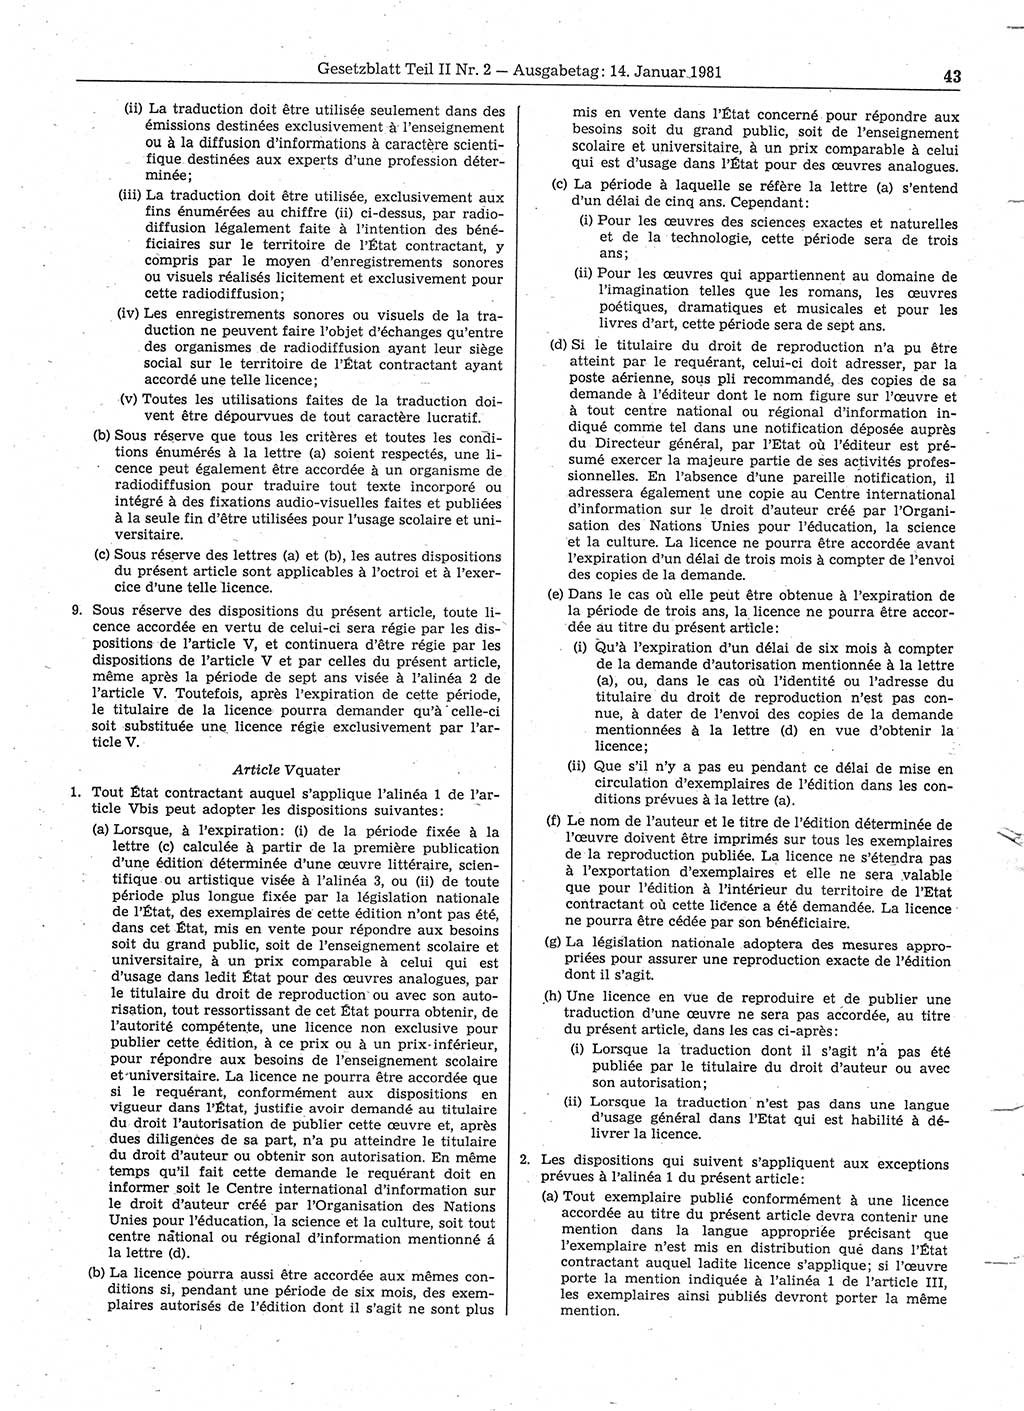 Gesetzblatt (GBl.) der Deutschen Demokratischen Republik (DDR) Teil ⅠⅠ 1981, Seite 43 (GBl. DDR ⅠⅠ 1981, S. 43)